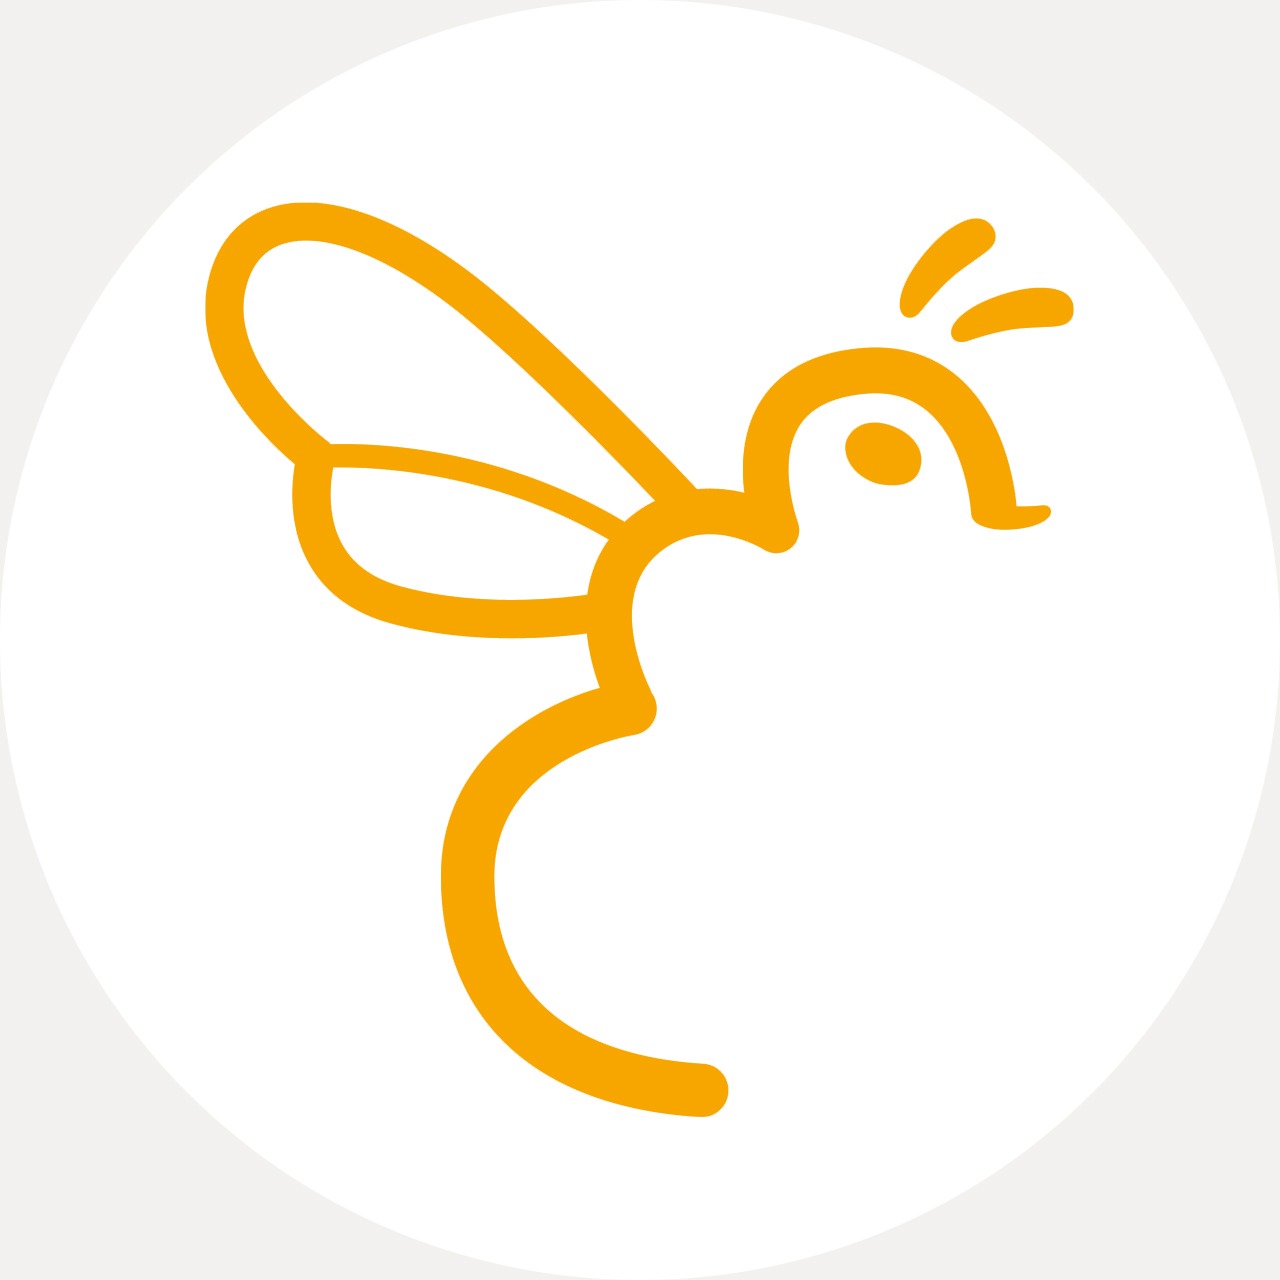 association pour la protection et la promotion de l'abeille noire, cap sizun, pays bigouden, abeille, apiculture, logo, charte graphique, identité visuelle